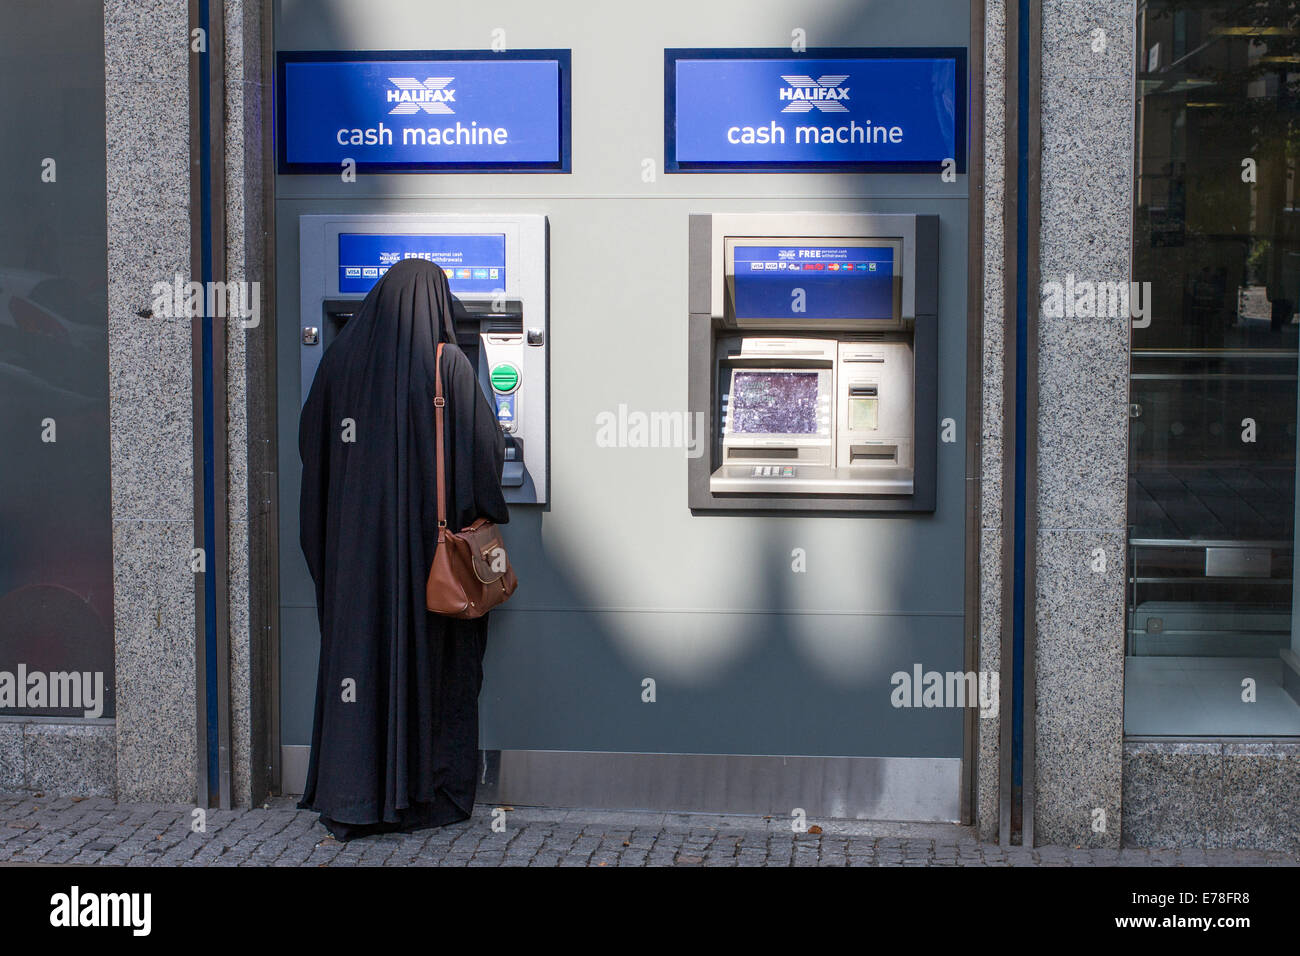 Une femme dans une burqa à l'aide d'une machine à cash d'Halifax Banque D'Images